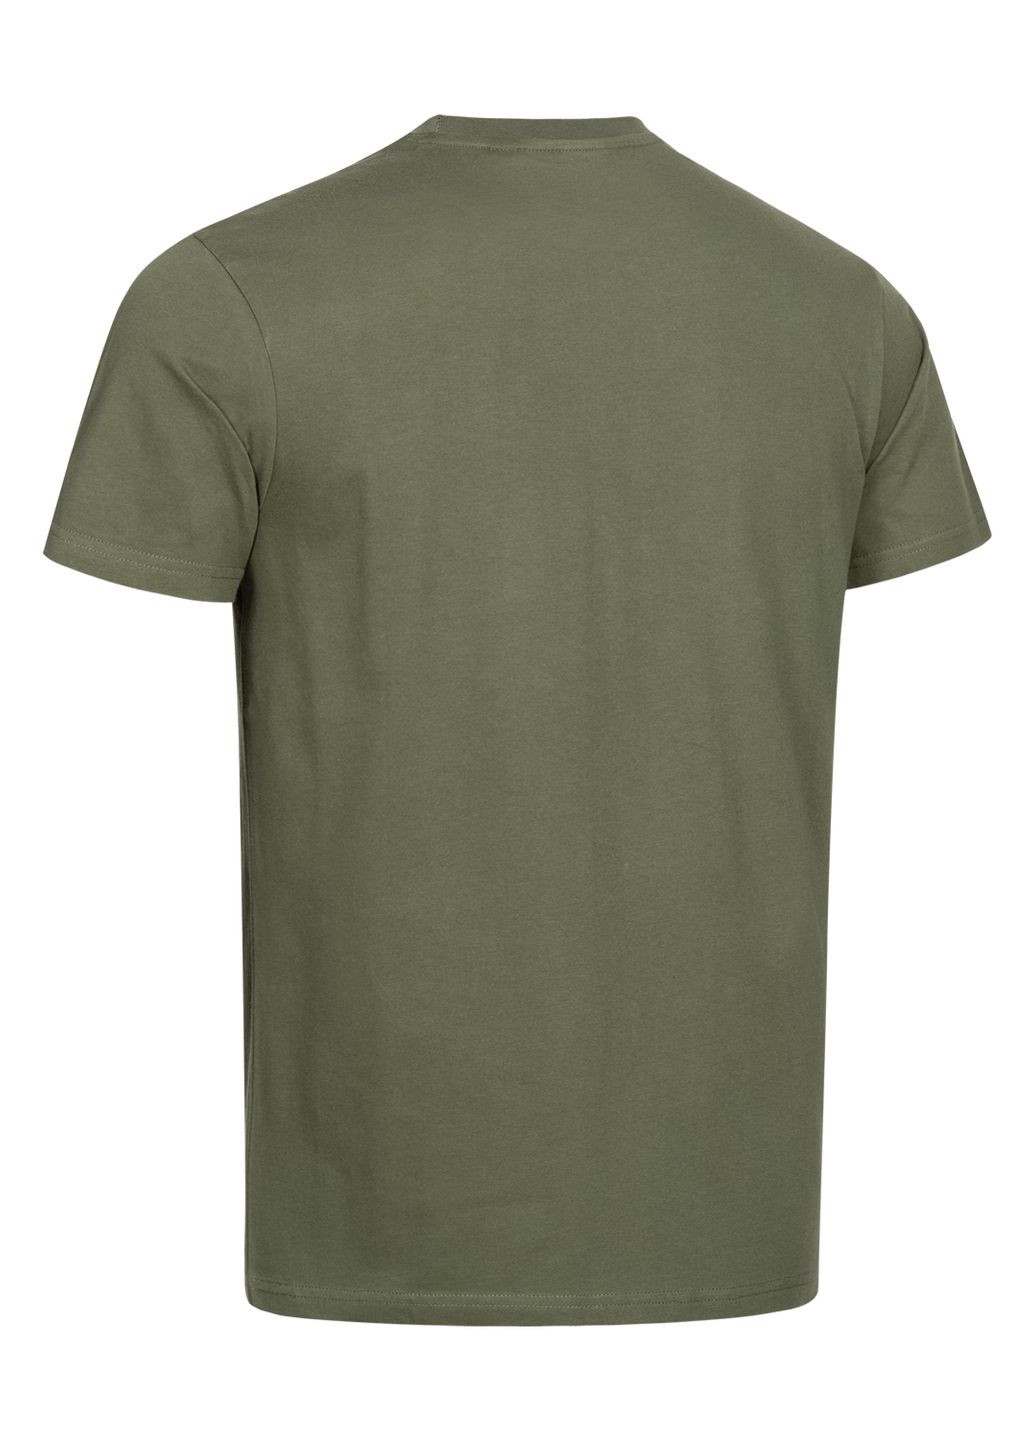 Комбинированная комплект 2 футболки Lonsdale Blairmore